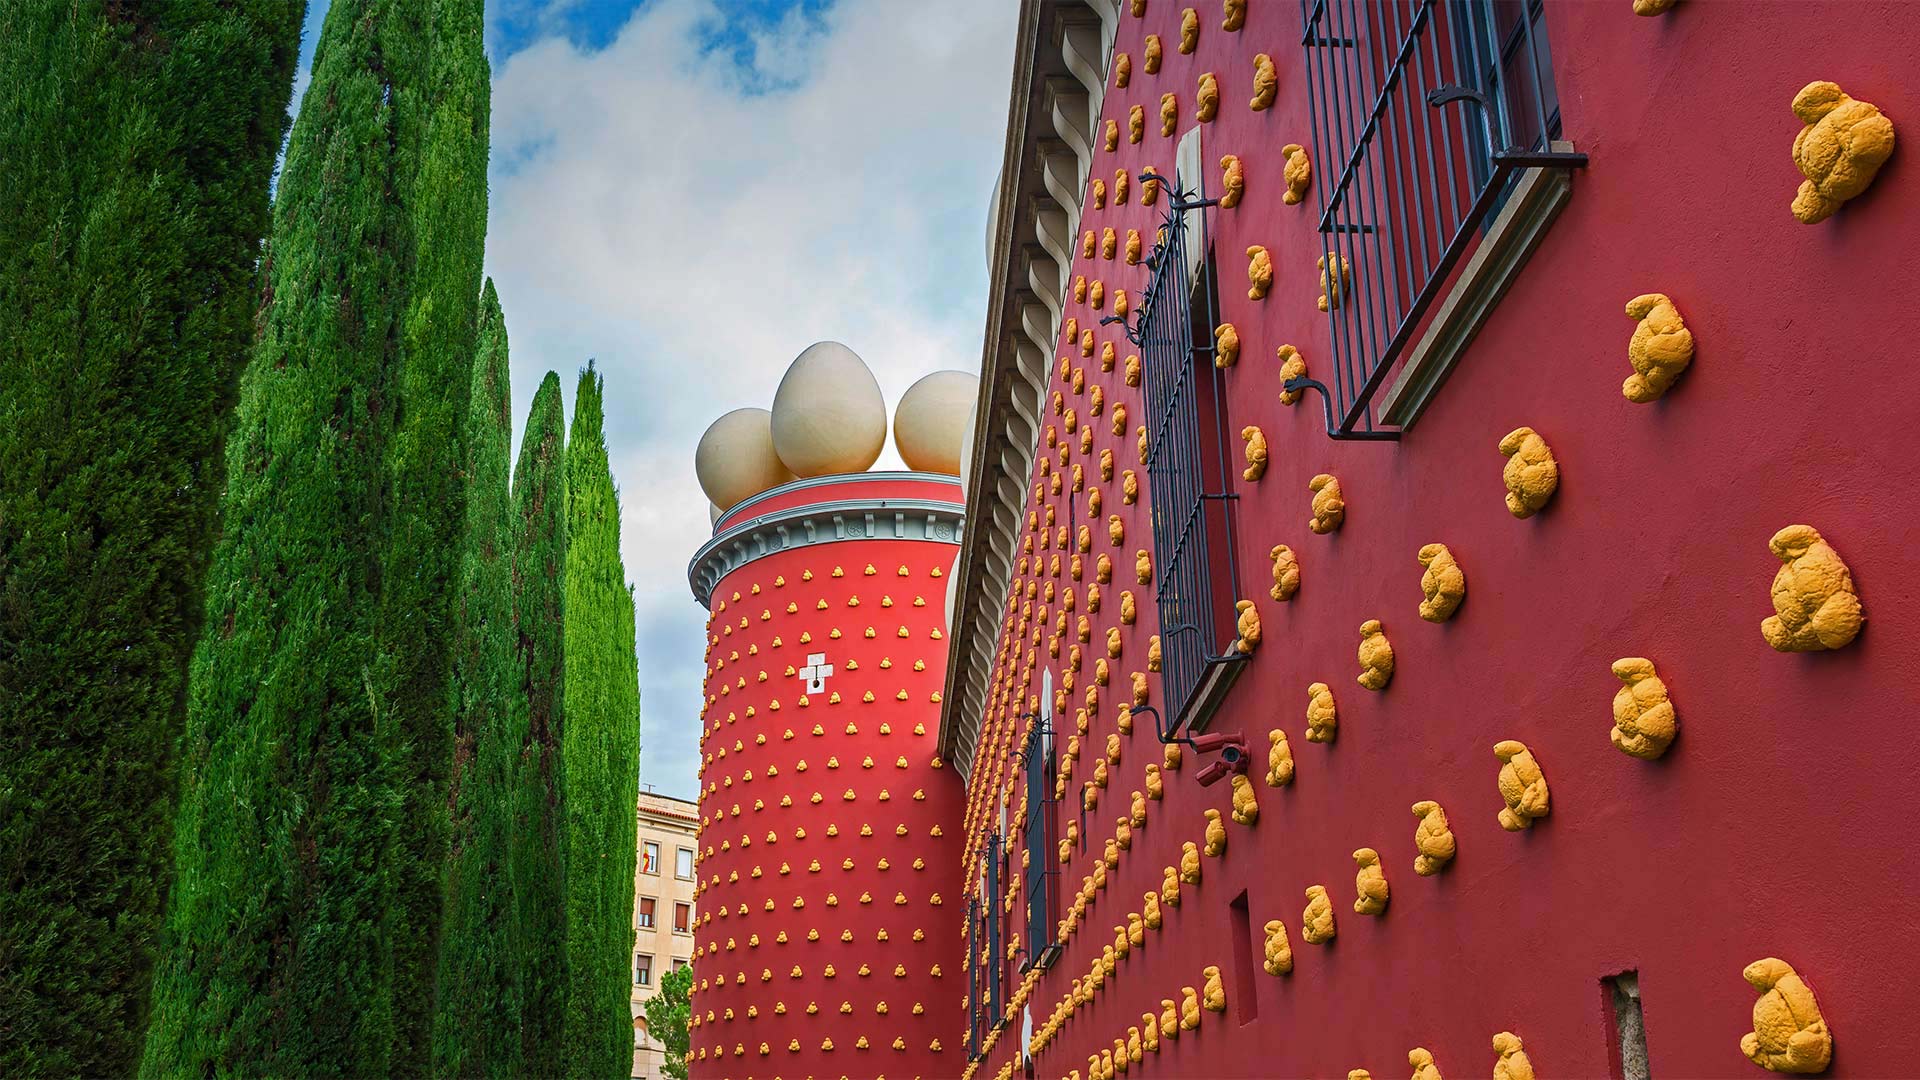 Dalí Theatre-Museum in Figueres, Spain - Valerija Polakovska/Shutterstock)